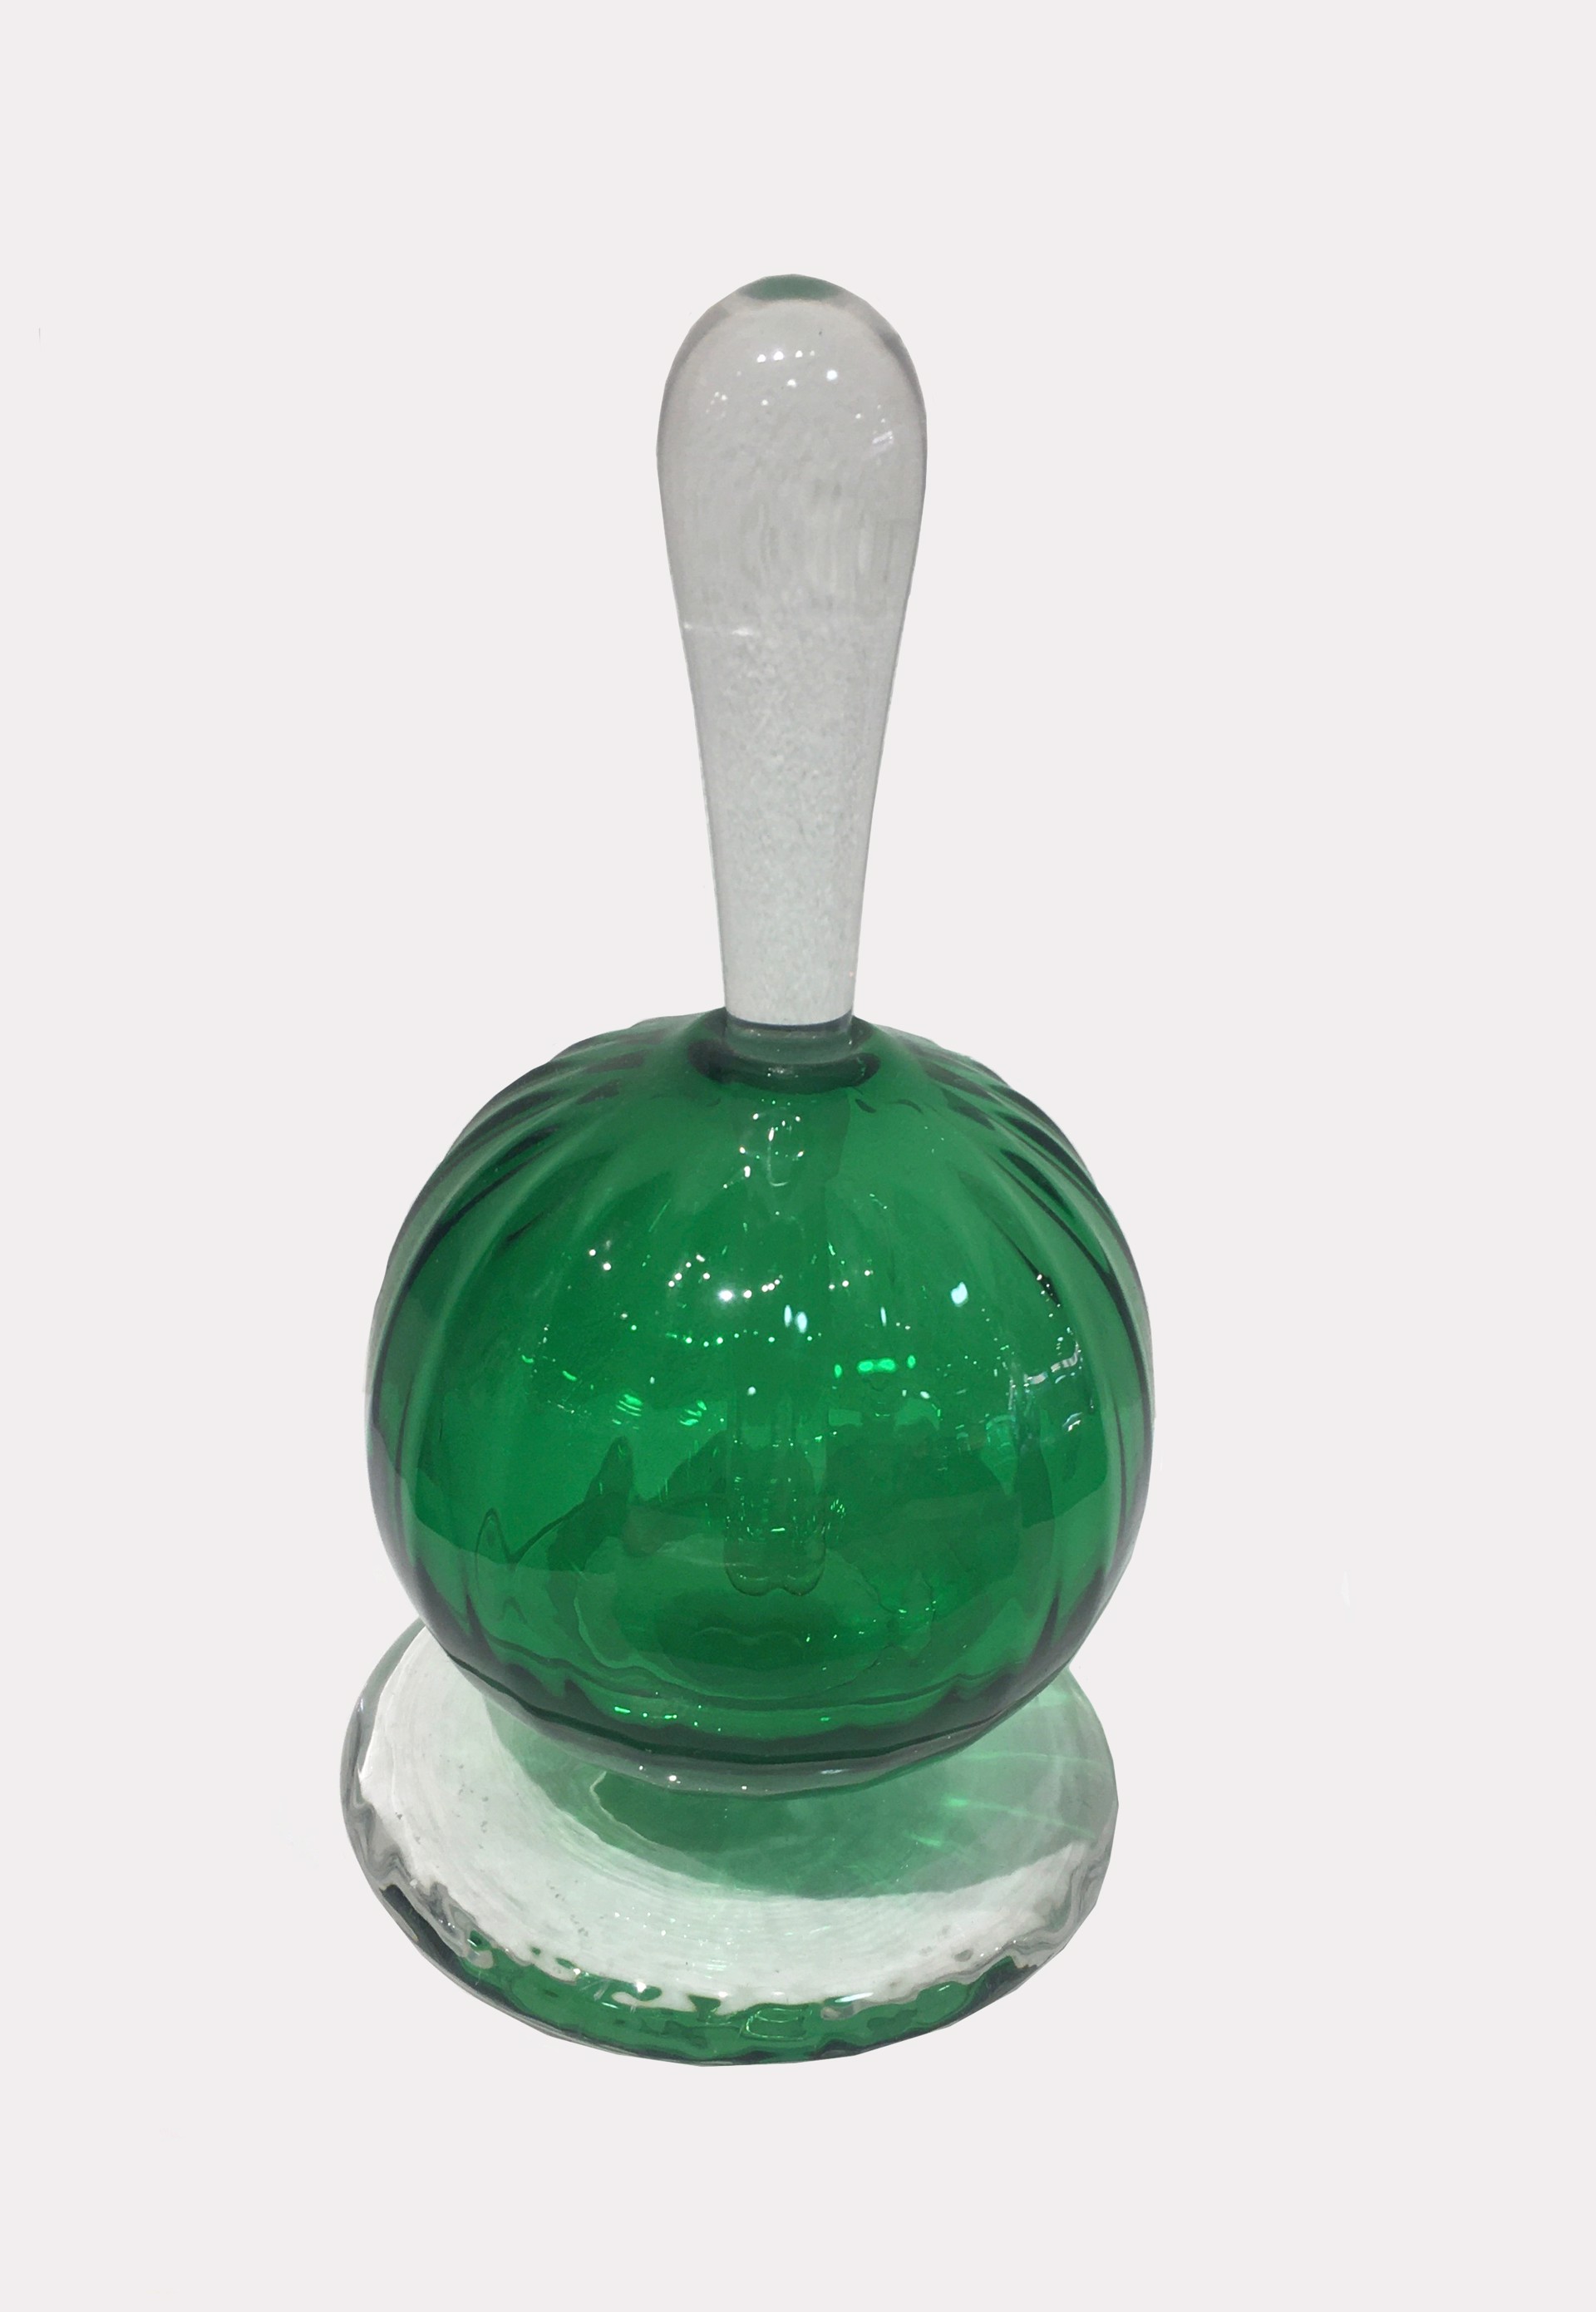 Green Perfume Bottle by Fritz Lauenstein